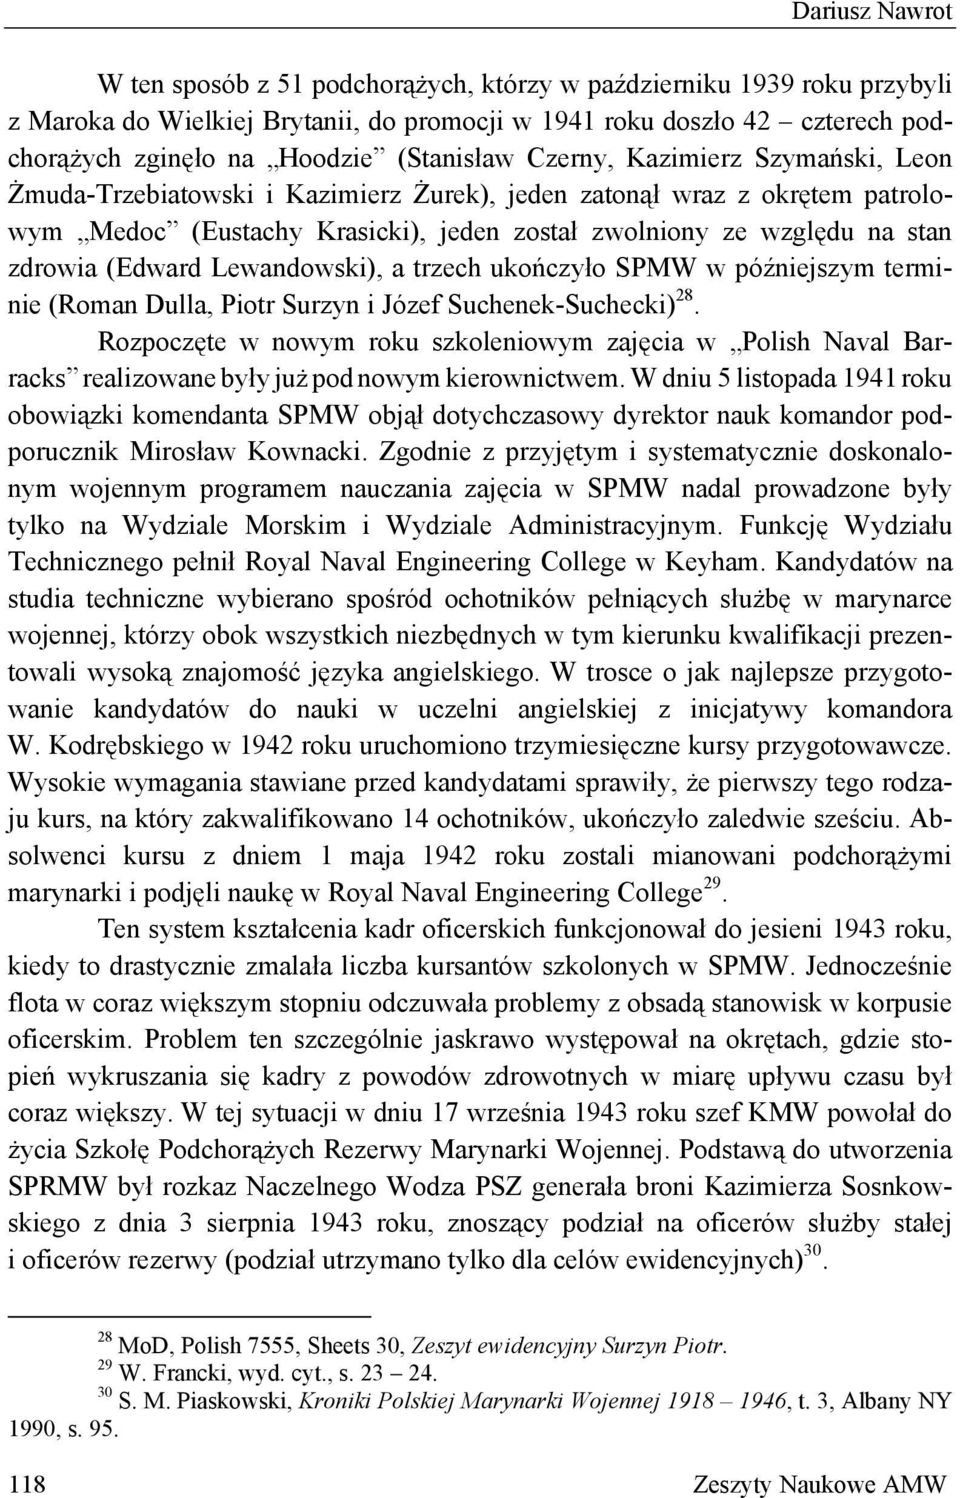 zdrowia (Edward Lewandowski), a trzech ukończyło SPMW w późniejszym terminie (Roman Dulla, Piotr Surzyn i Józef Suchenek-Suchecki) 28.